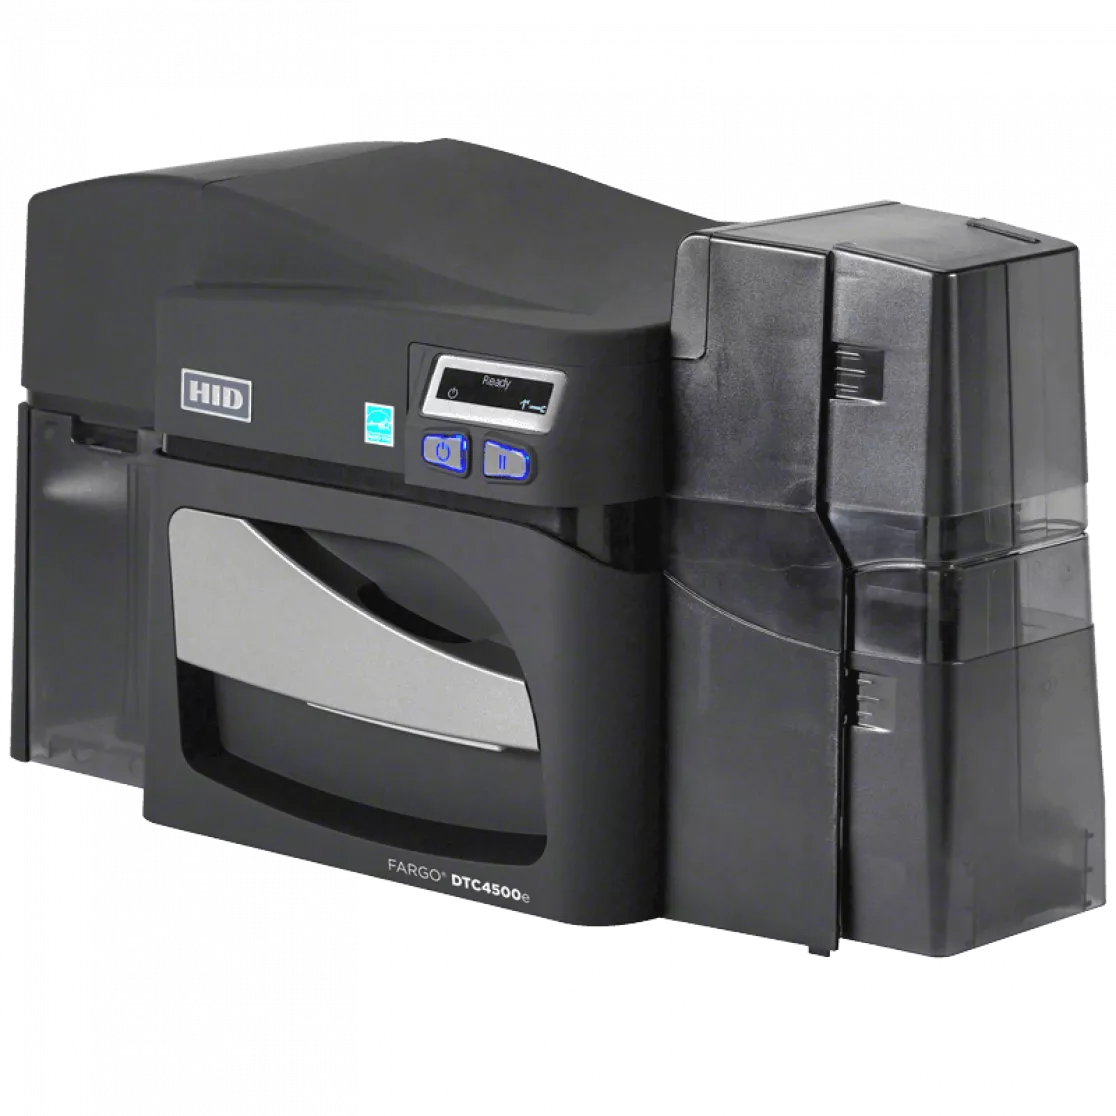 HID Fargo DTC4500e Card printer